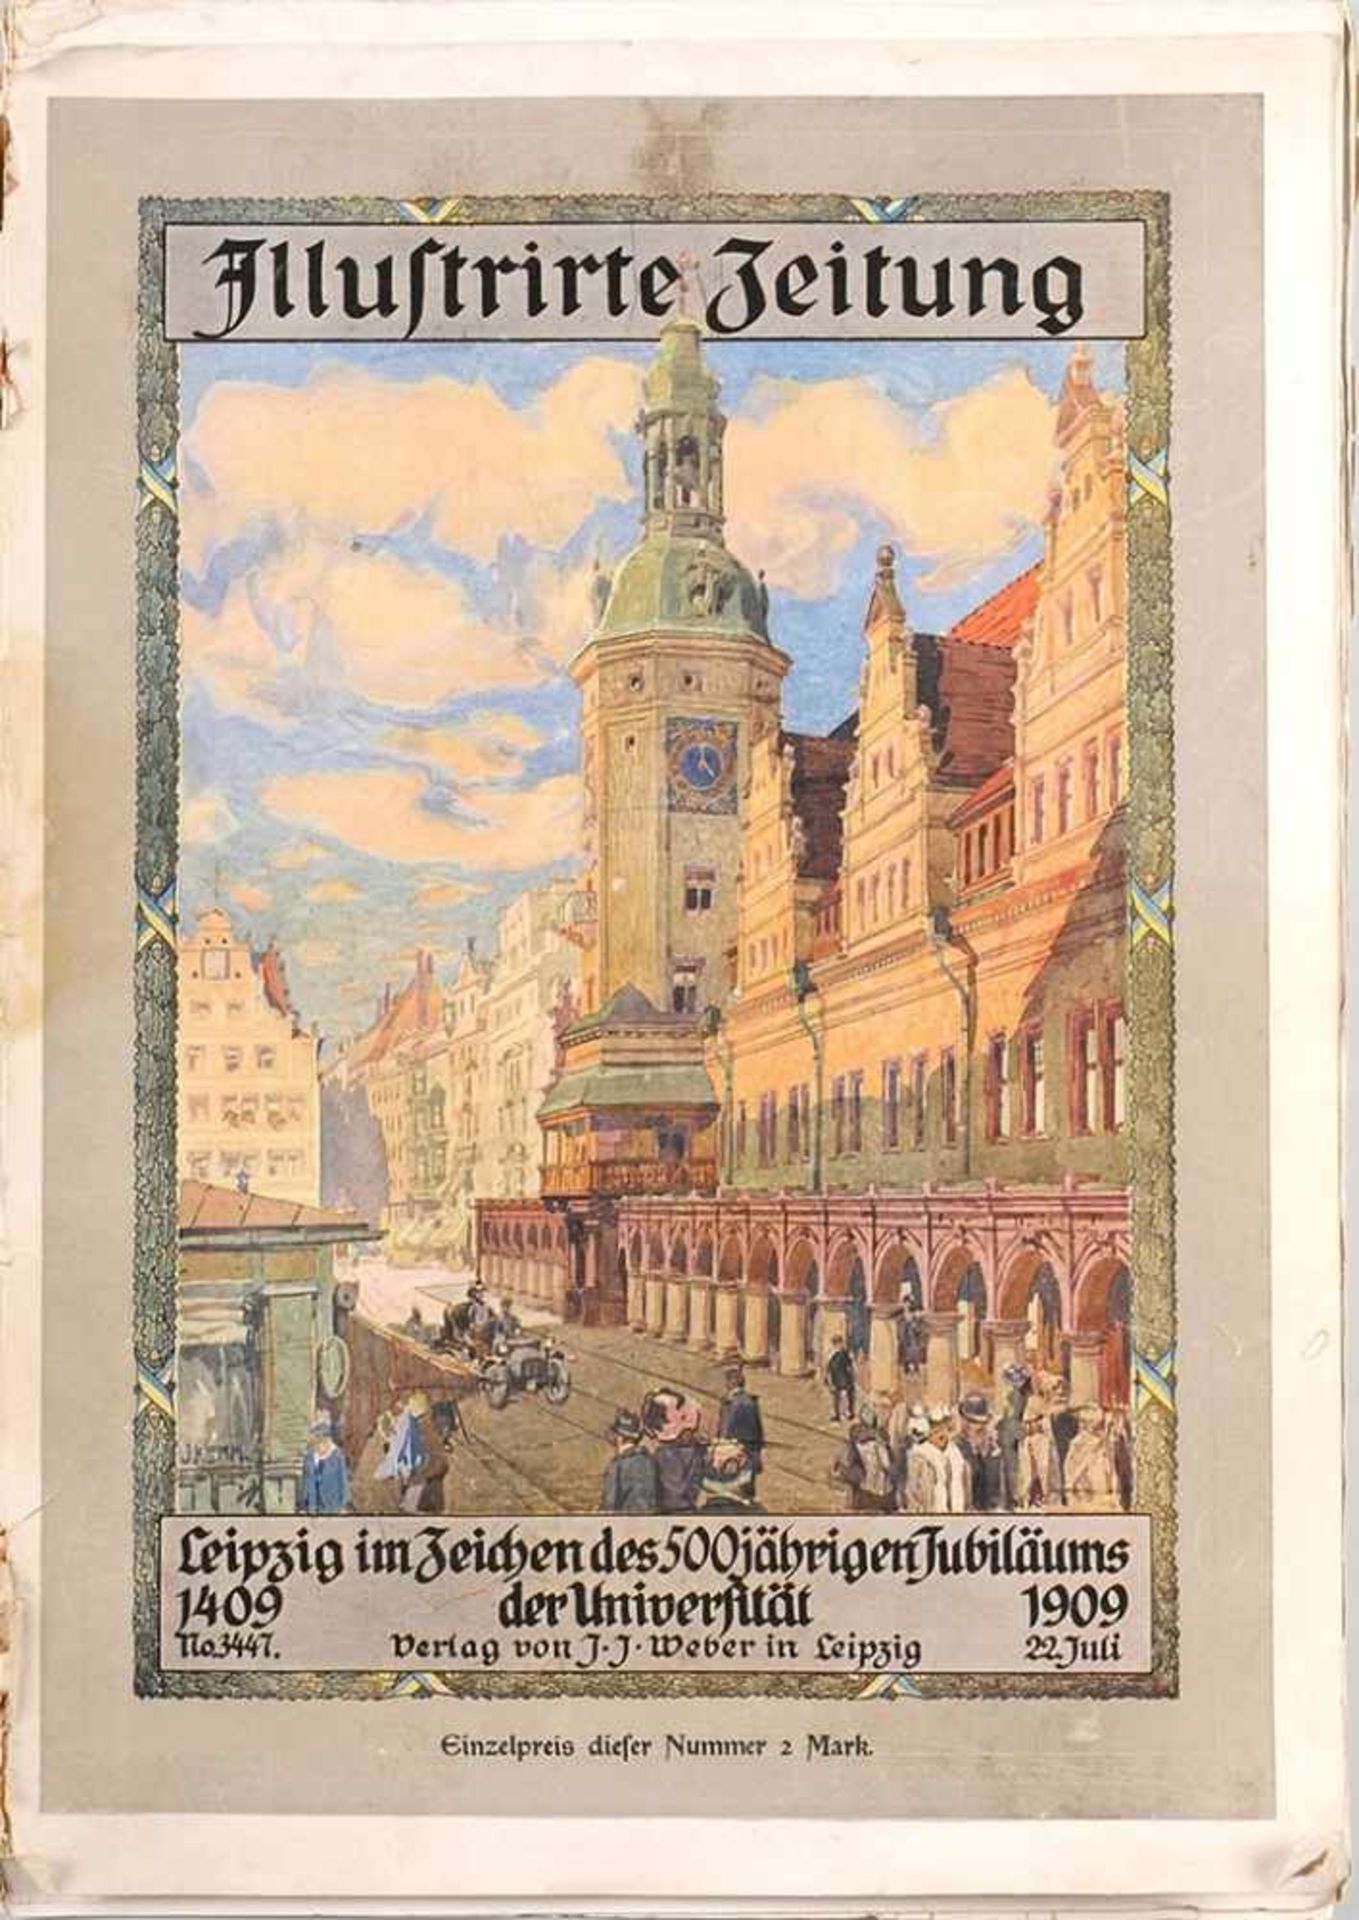 "Illustrierte Zeitung. Leipzig im Zeichen des 500jährigen Jubiläums der Universität." No. 3447. - Bild 2 aus 3